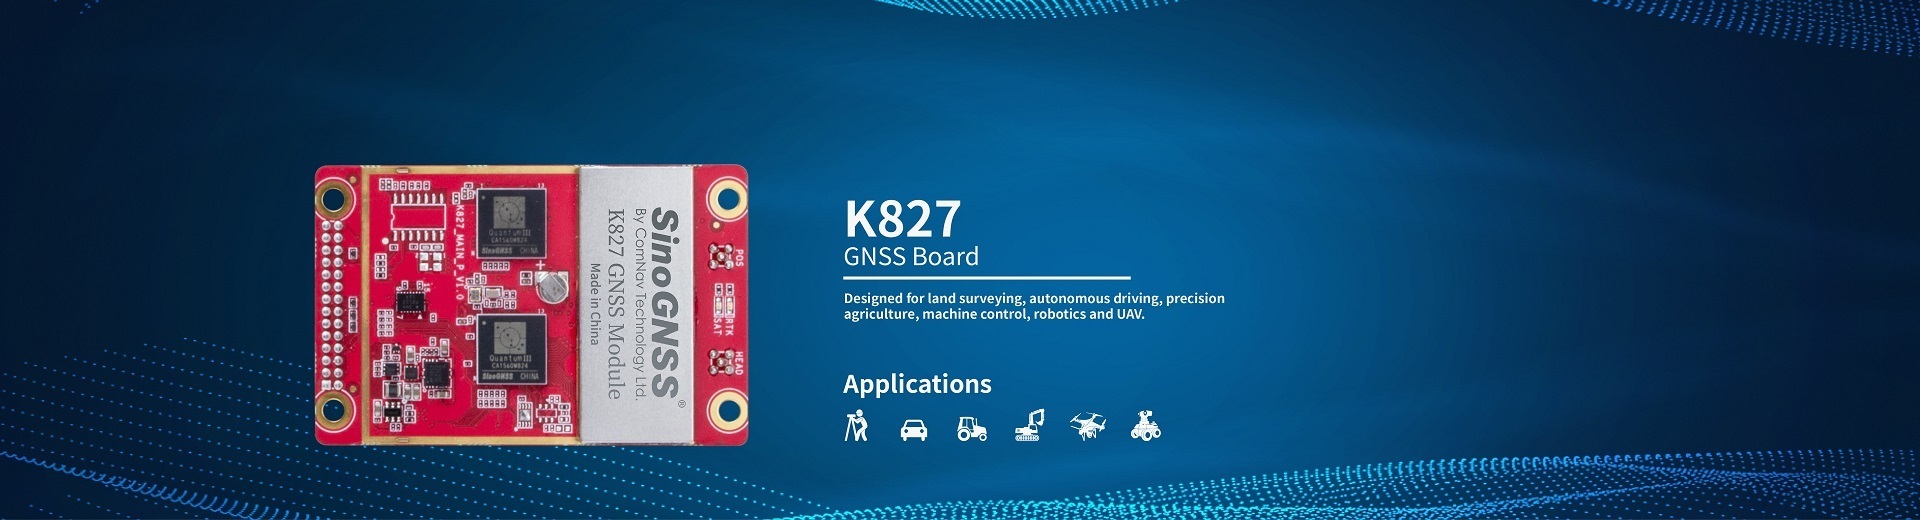 K827 GNSS Board